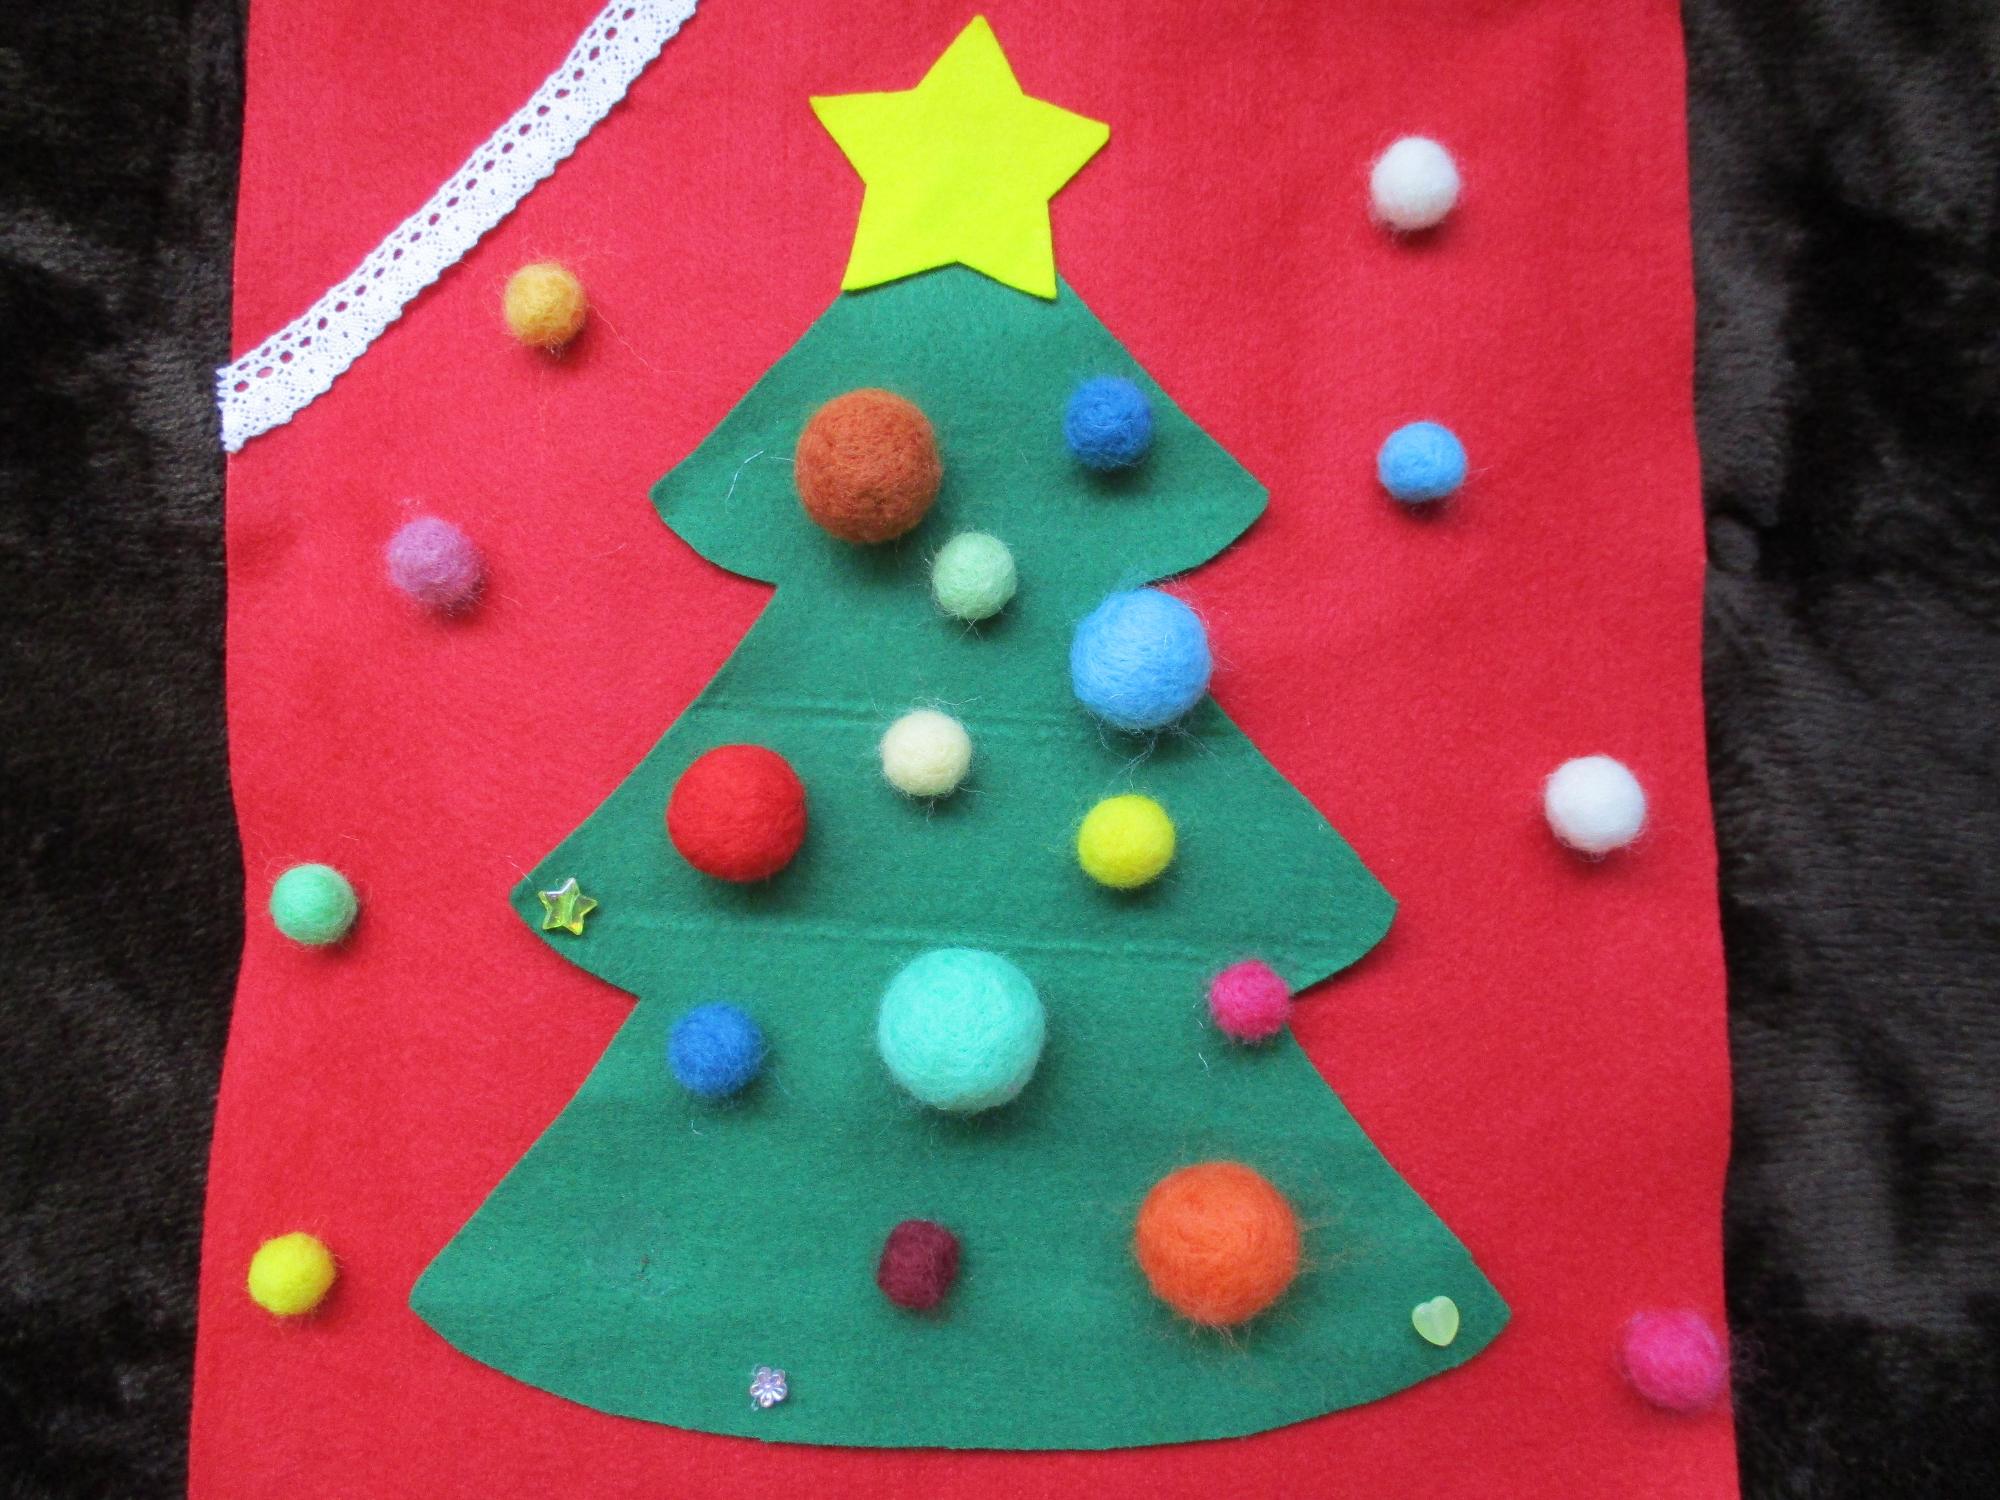 赤地に緑のクリスマスツリーと天辺の星がかわいい壁に飾られたクリスマスのタペストリーの写真